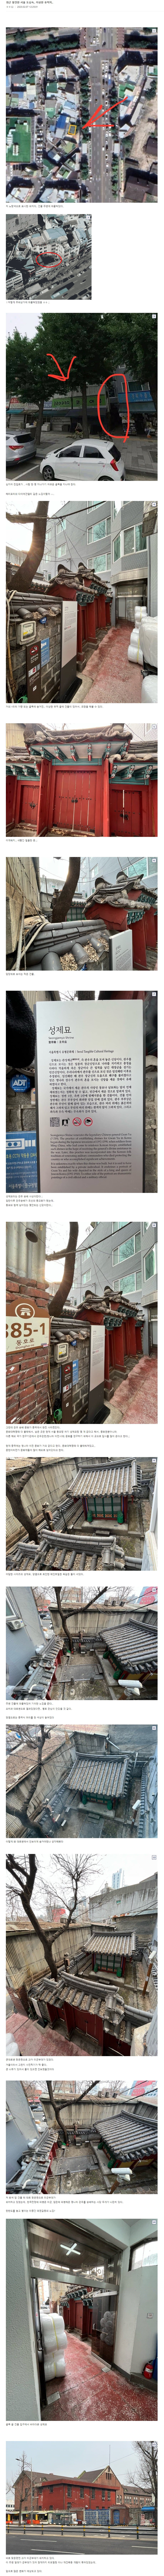 7 서울 도심속 이상한 유적지.jpg